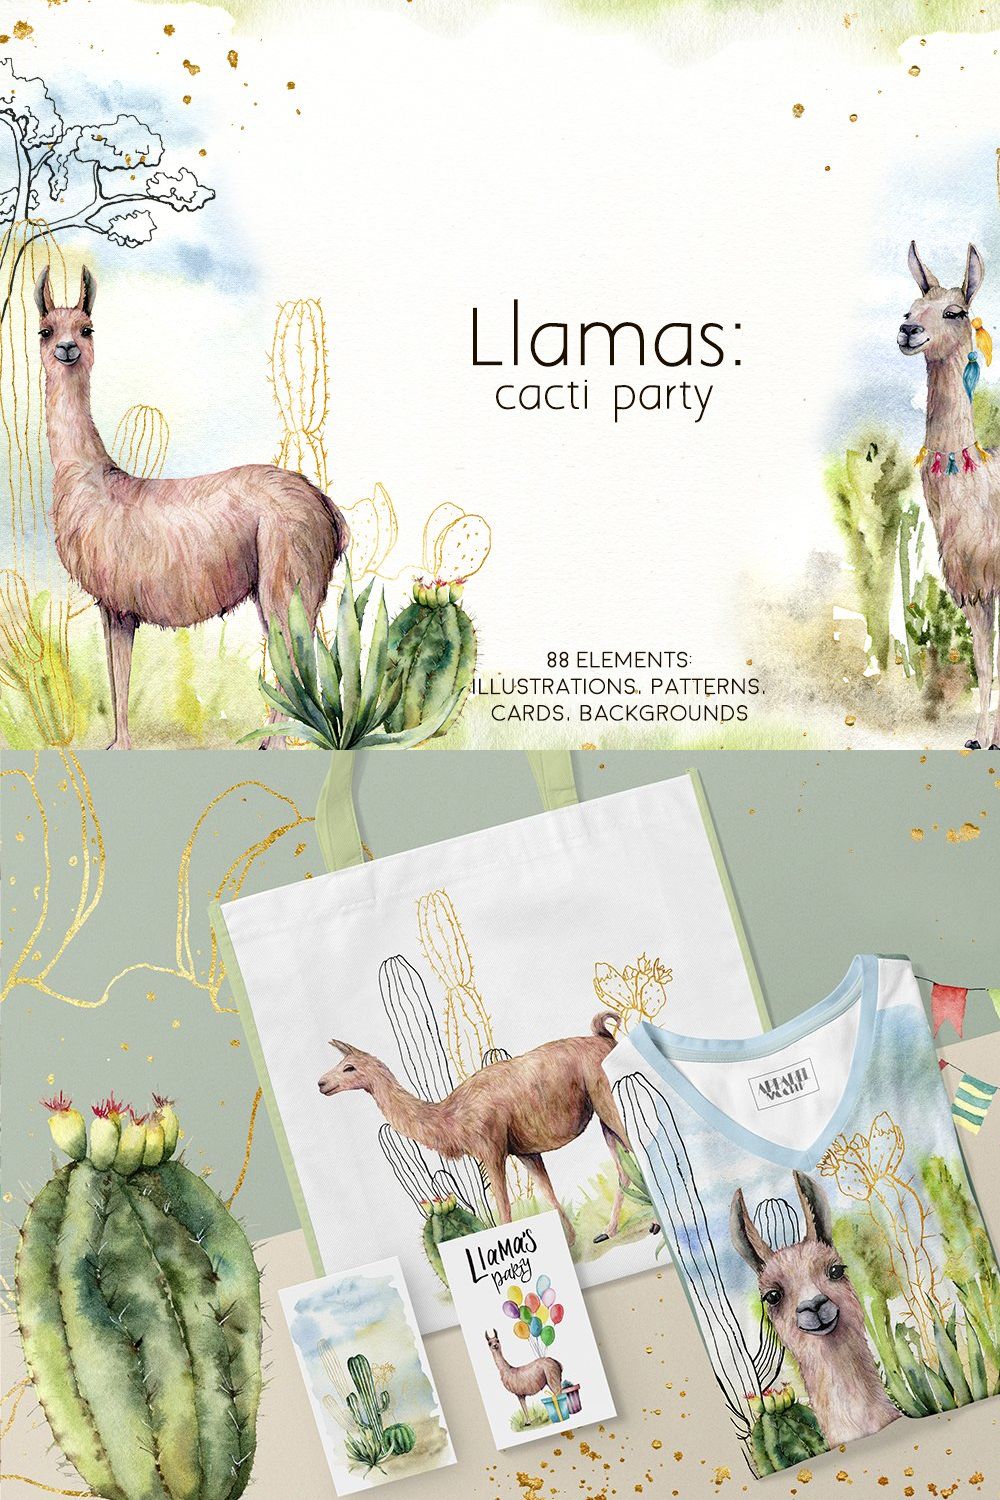 Llamas: cacti party watercolor llama pinterest preview image.